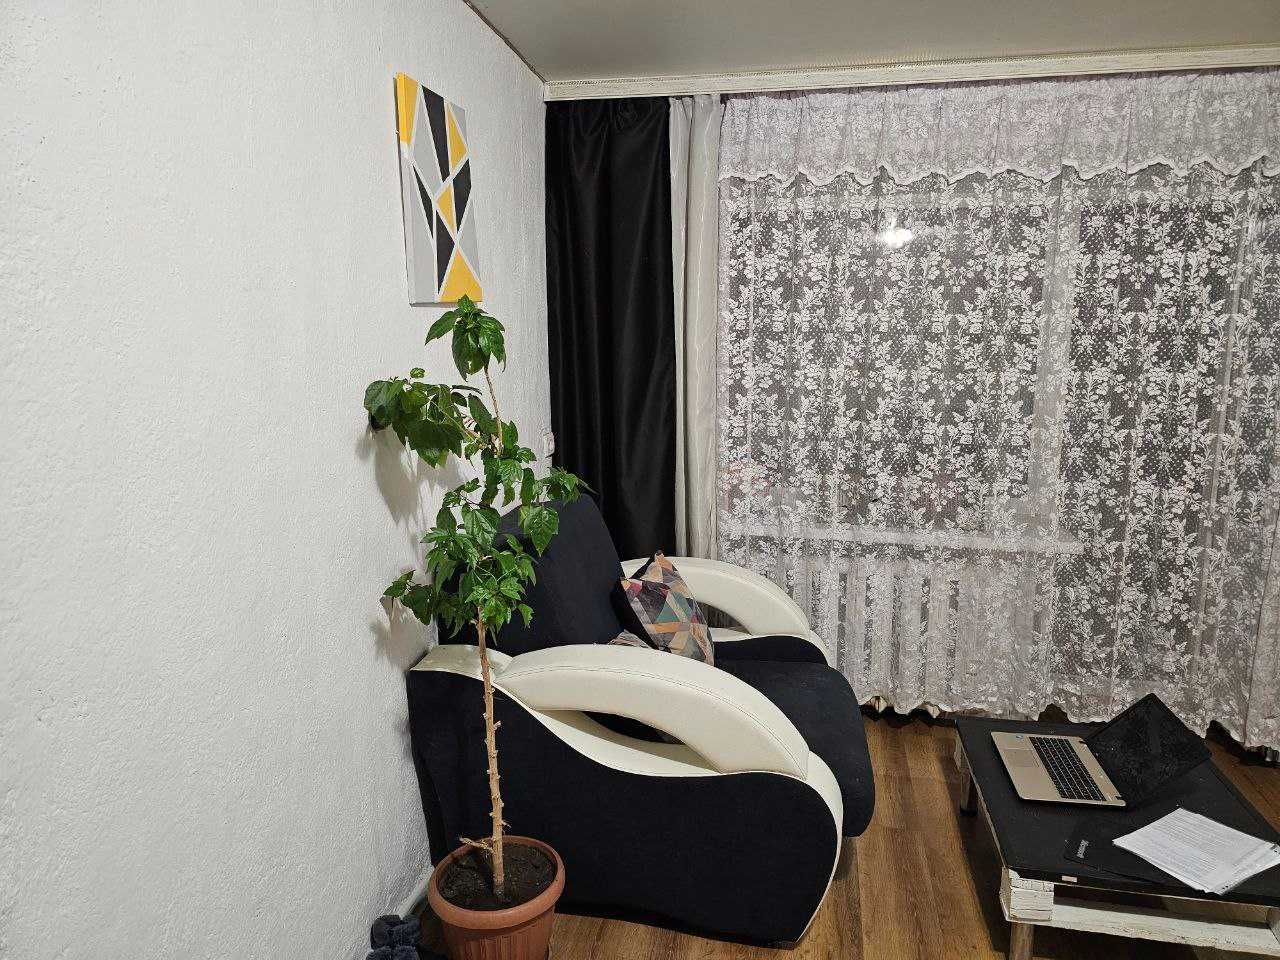 Продам 2-х комнатную квартиру в Усть-Таловке